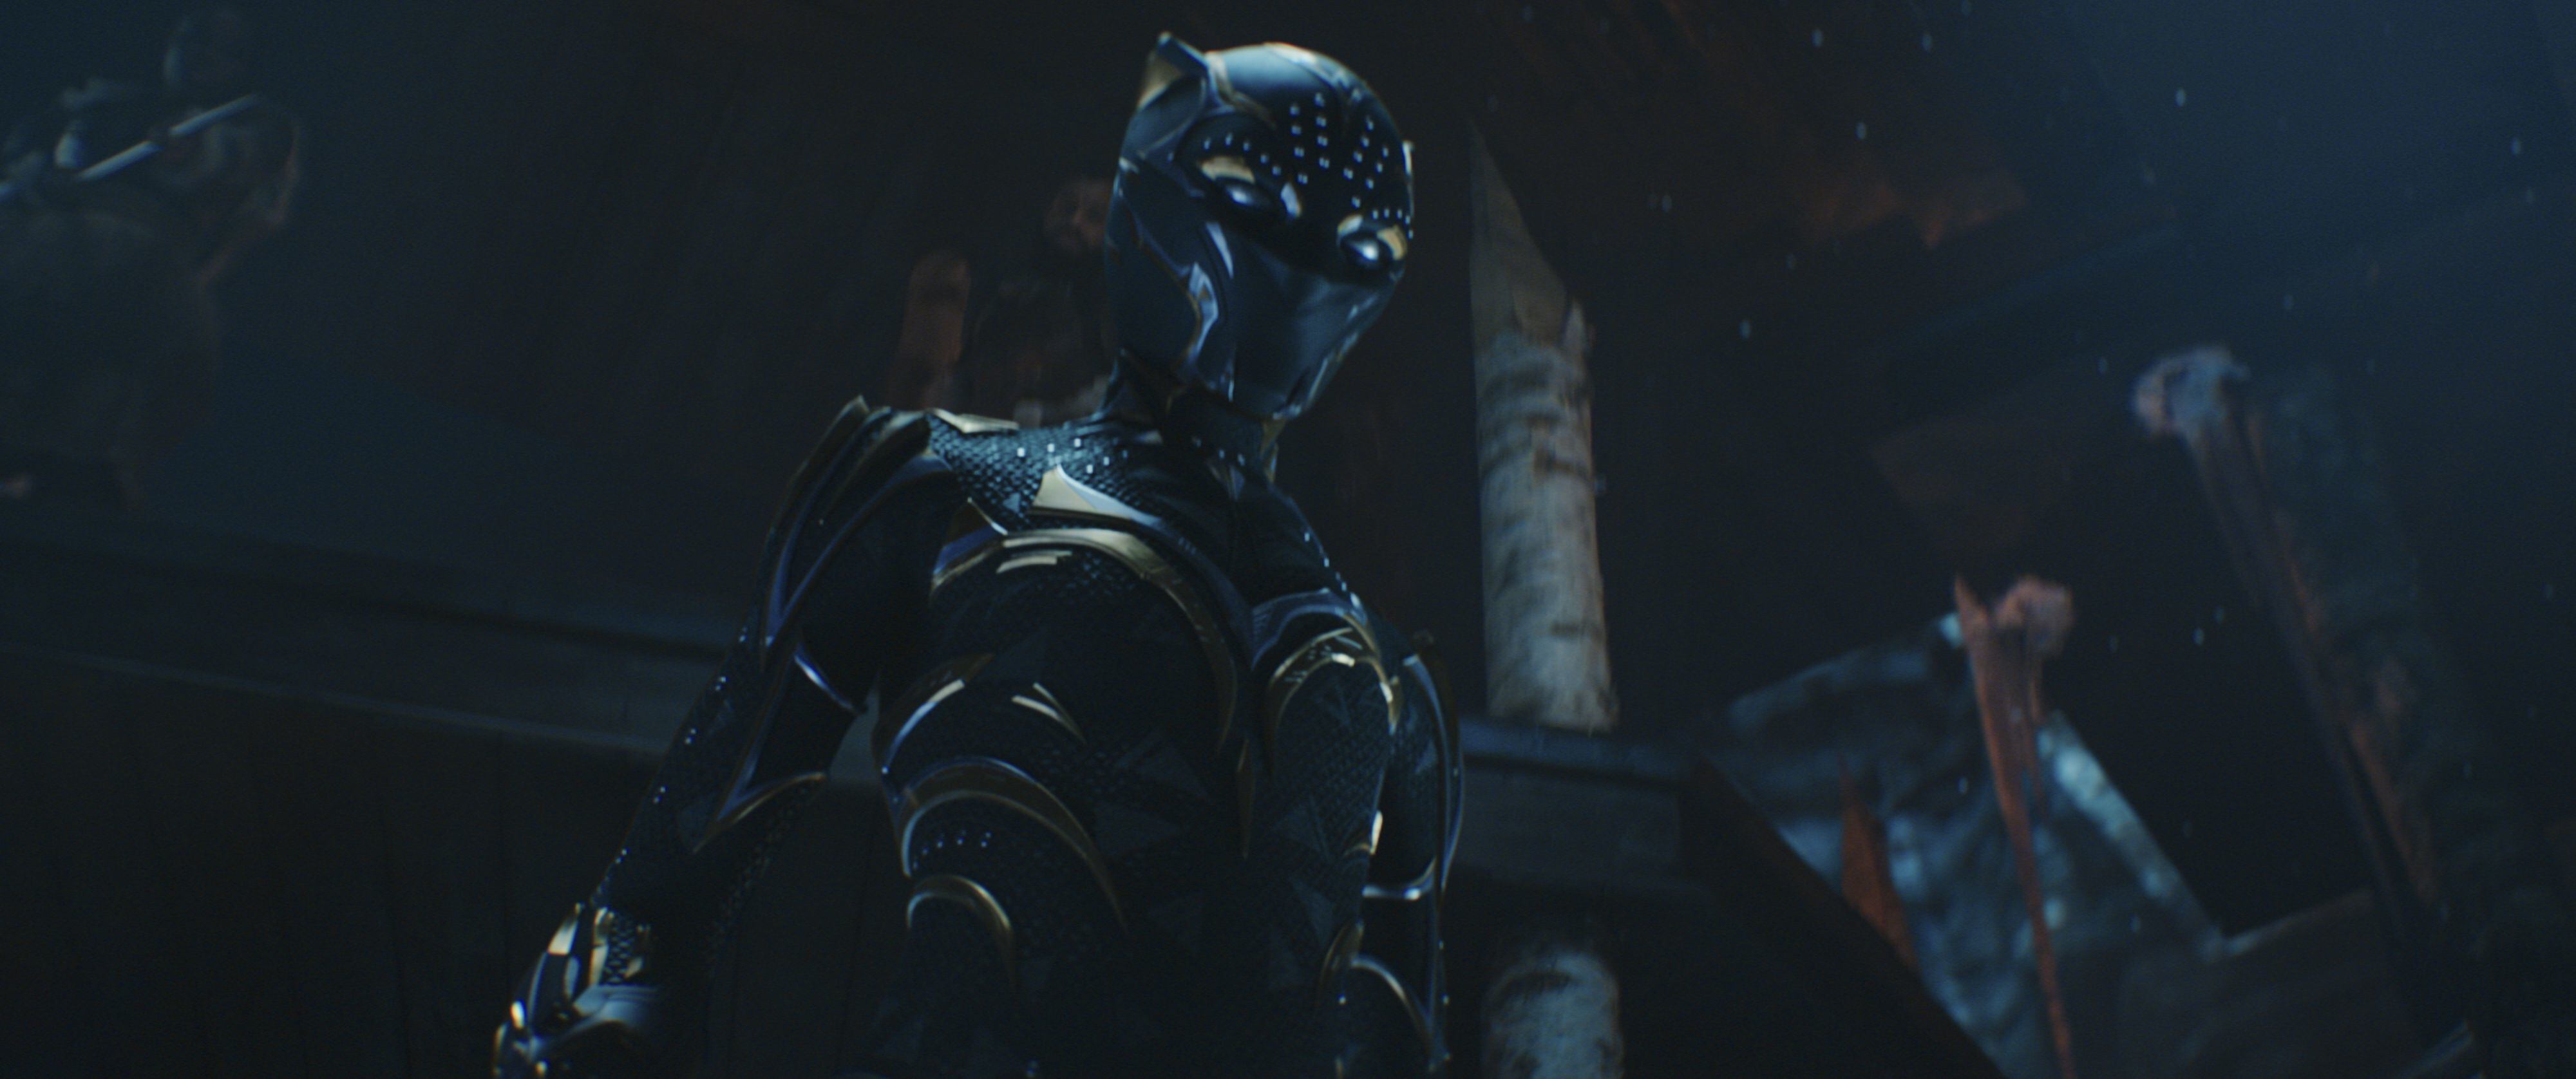 Ryan Coogler on Original Black Panther: Wakanda Forever Plans